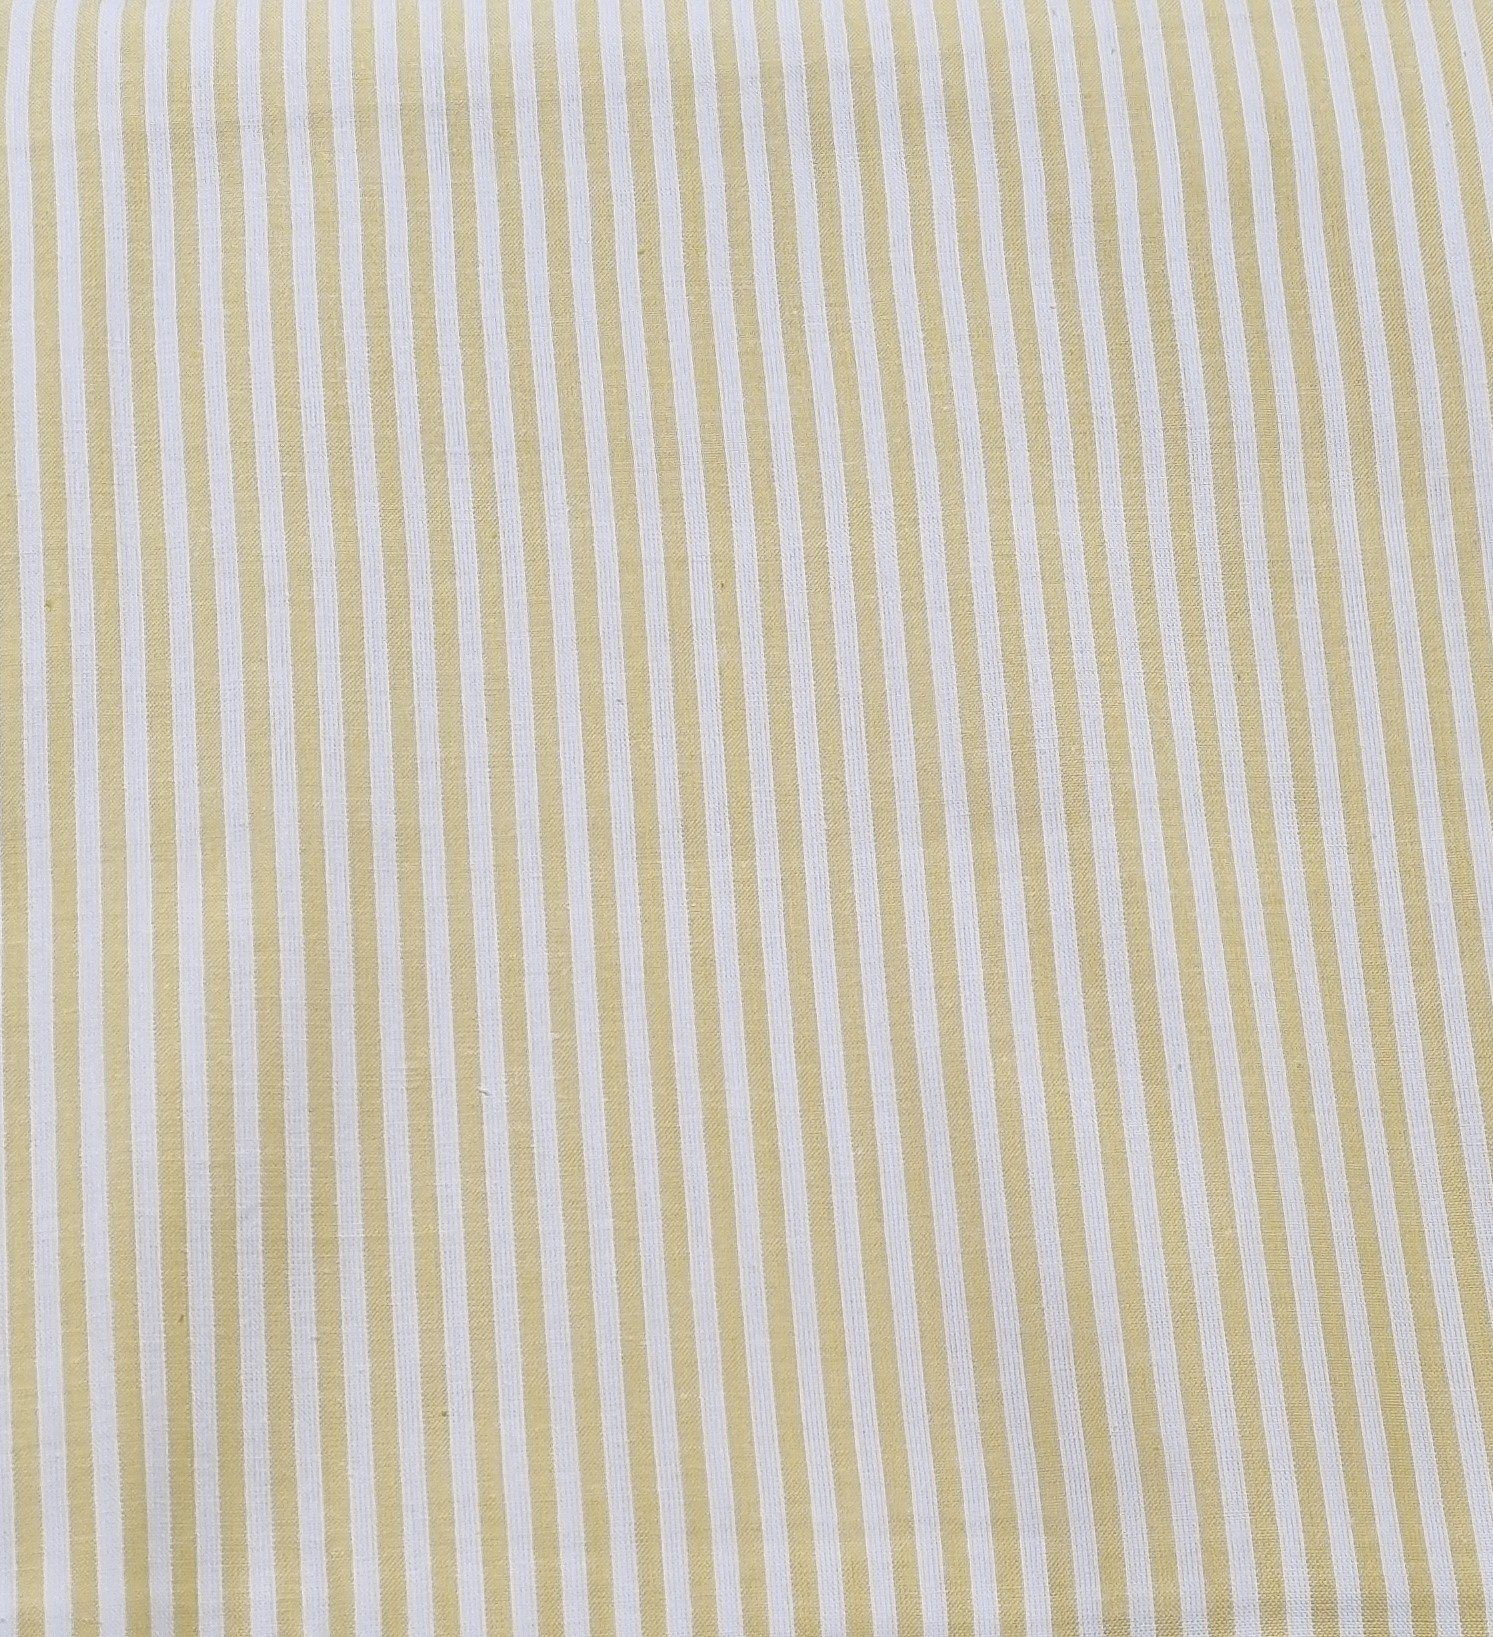 Bettdecke + Kopfkissen, Bettwäsche-Set 74112 gelb-weiß gestreift 2-teilig, Bellezza